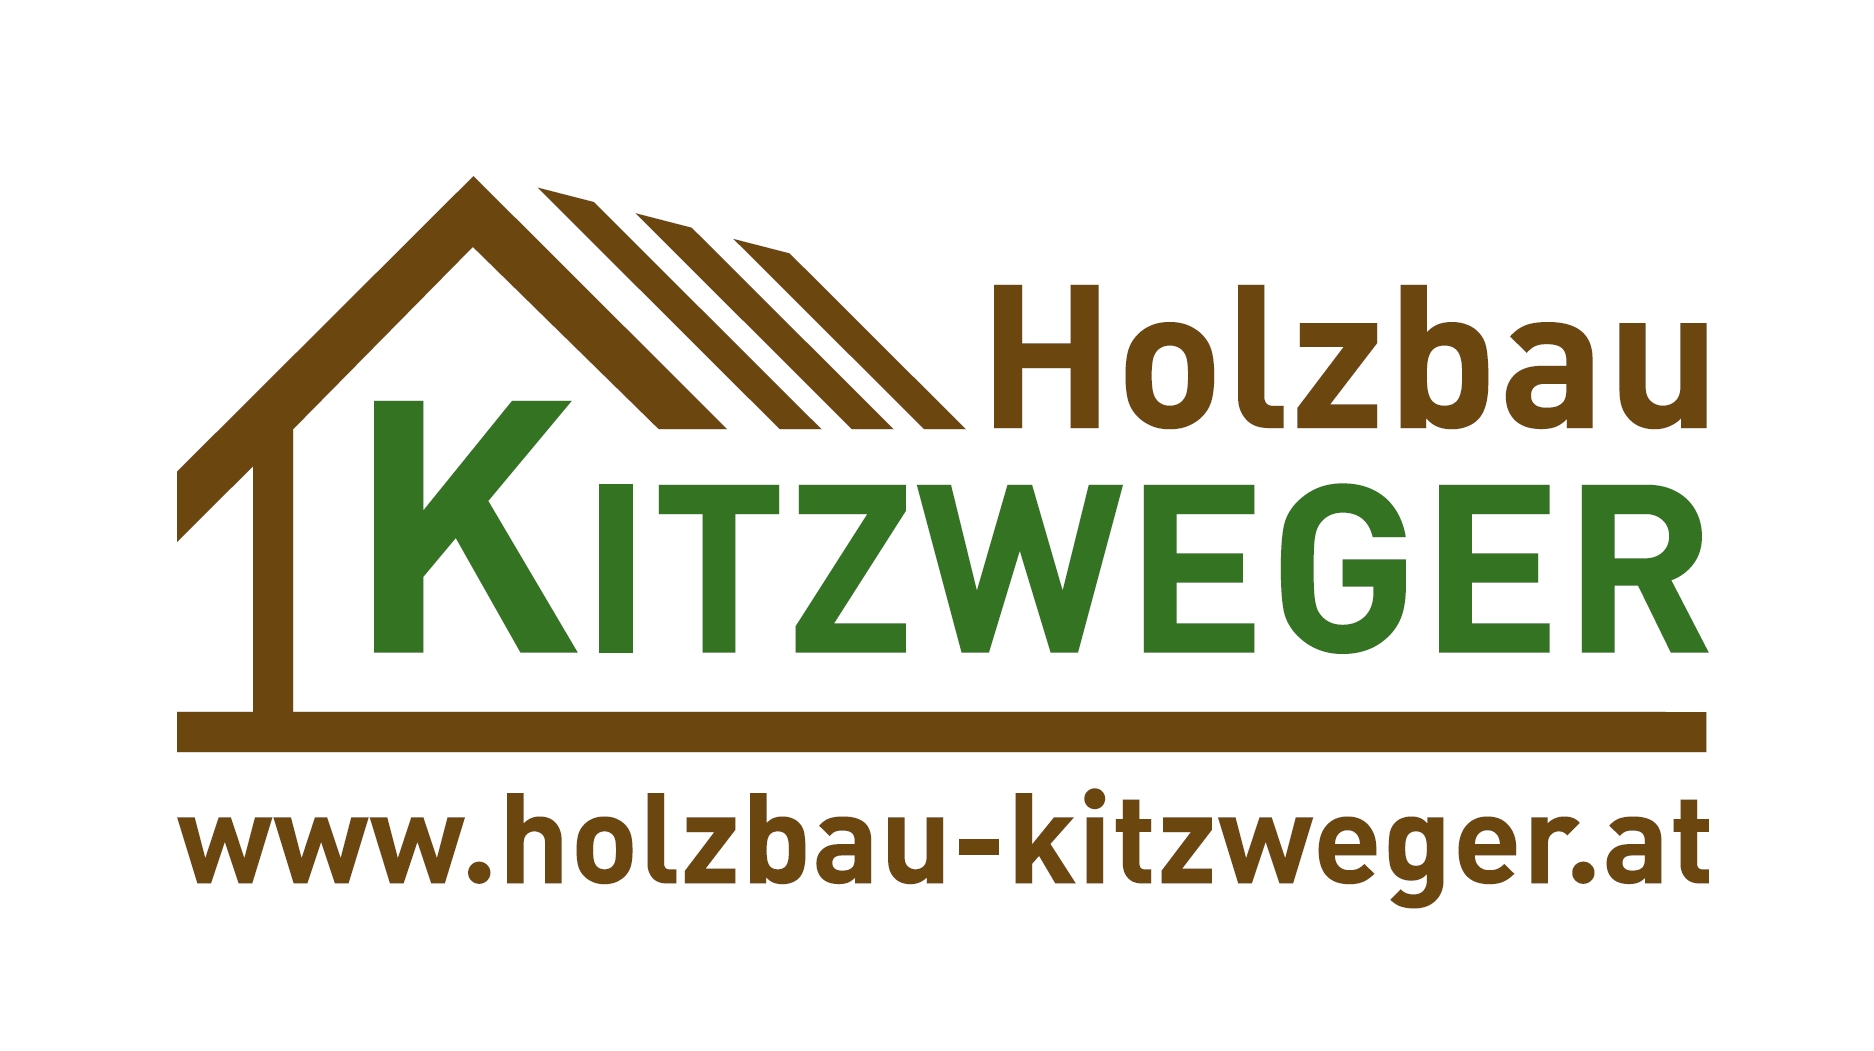 Holzbau Kitzweger